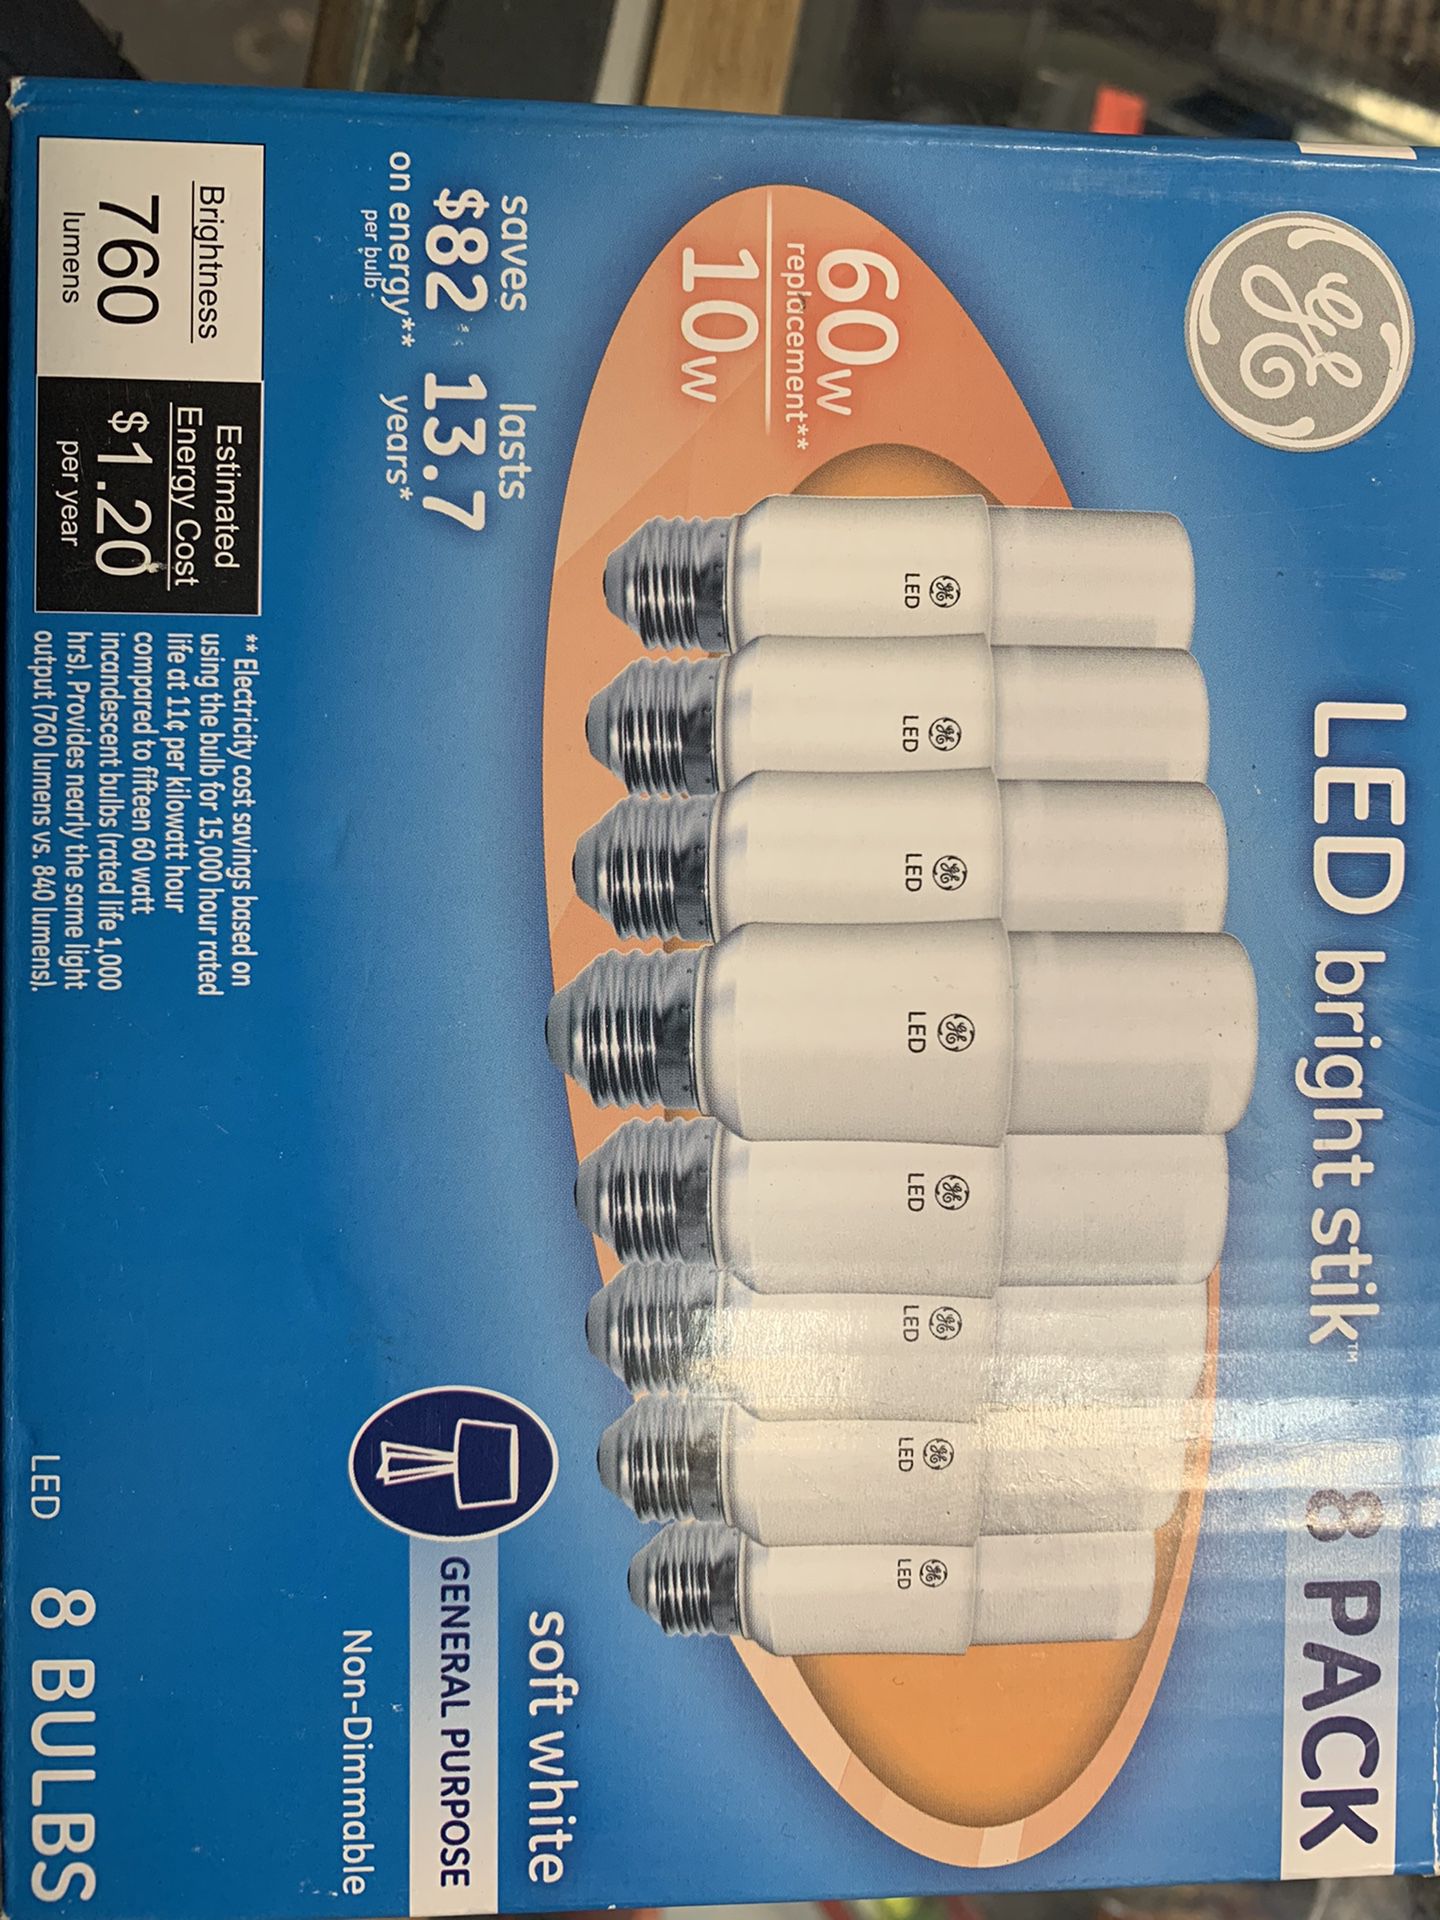 LED light bulb 8 pack